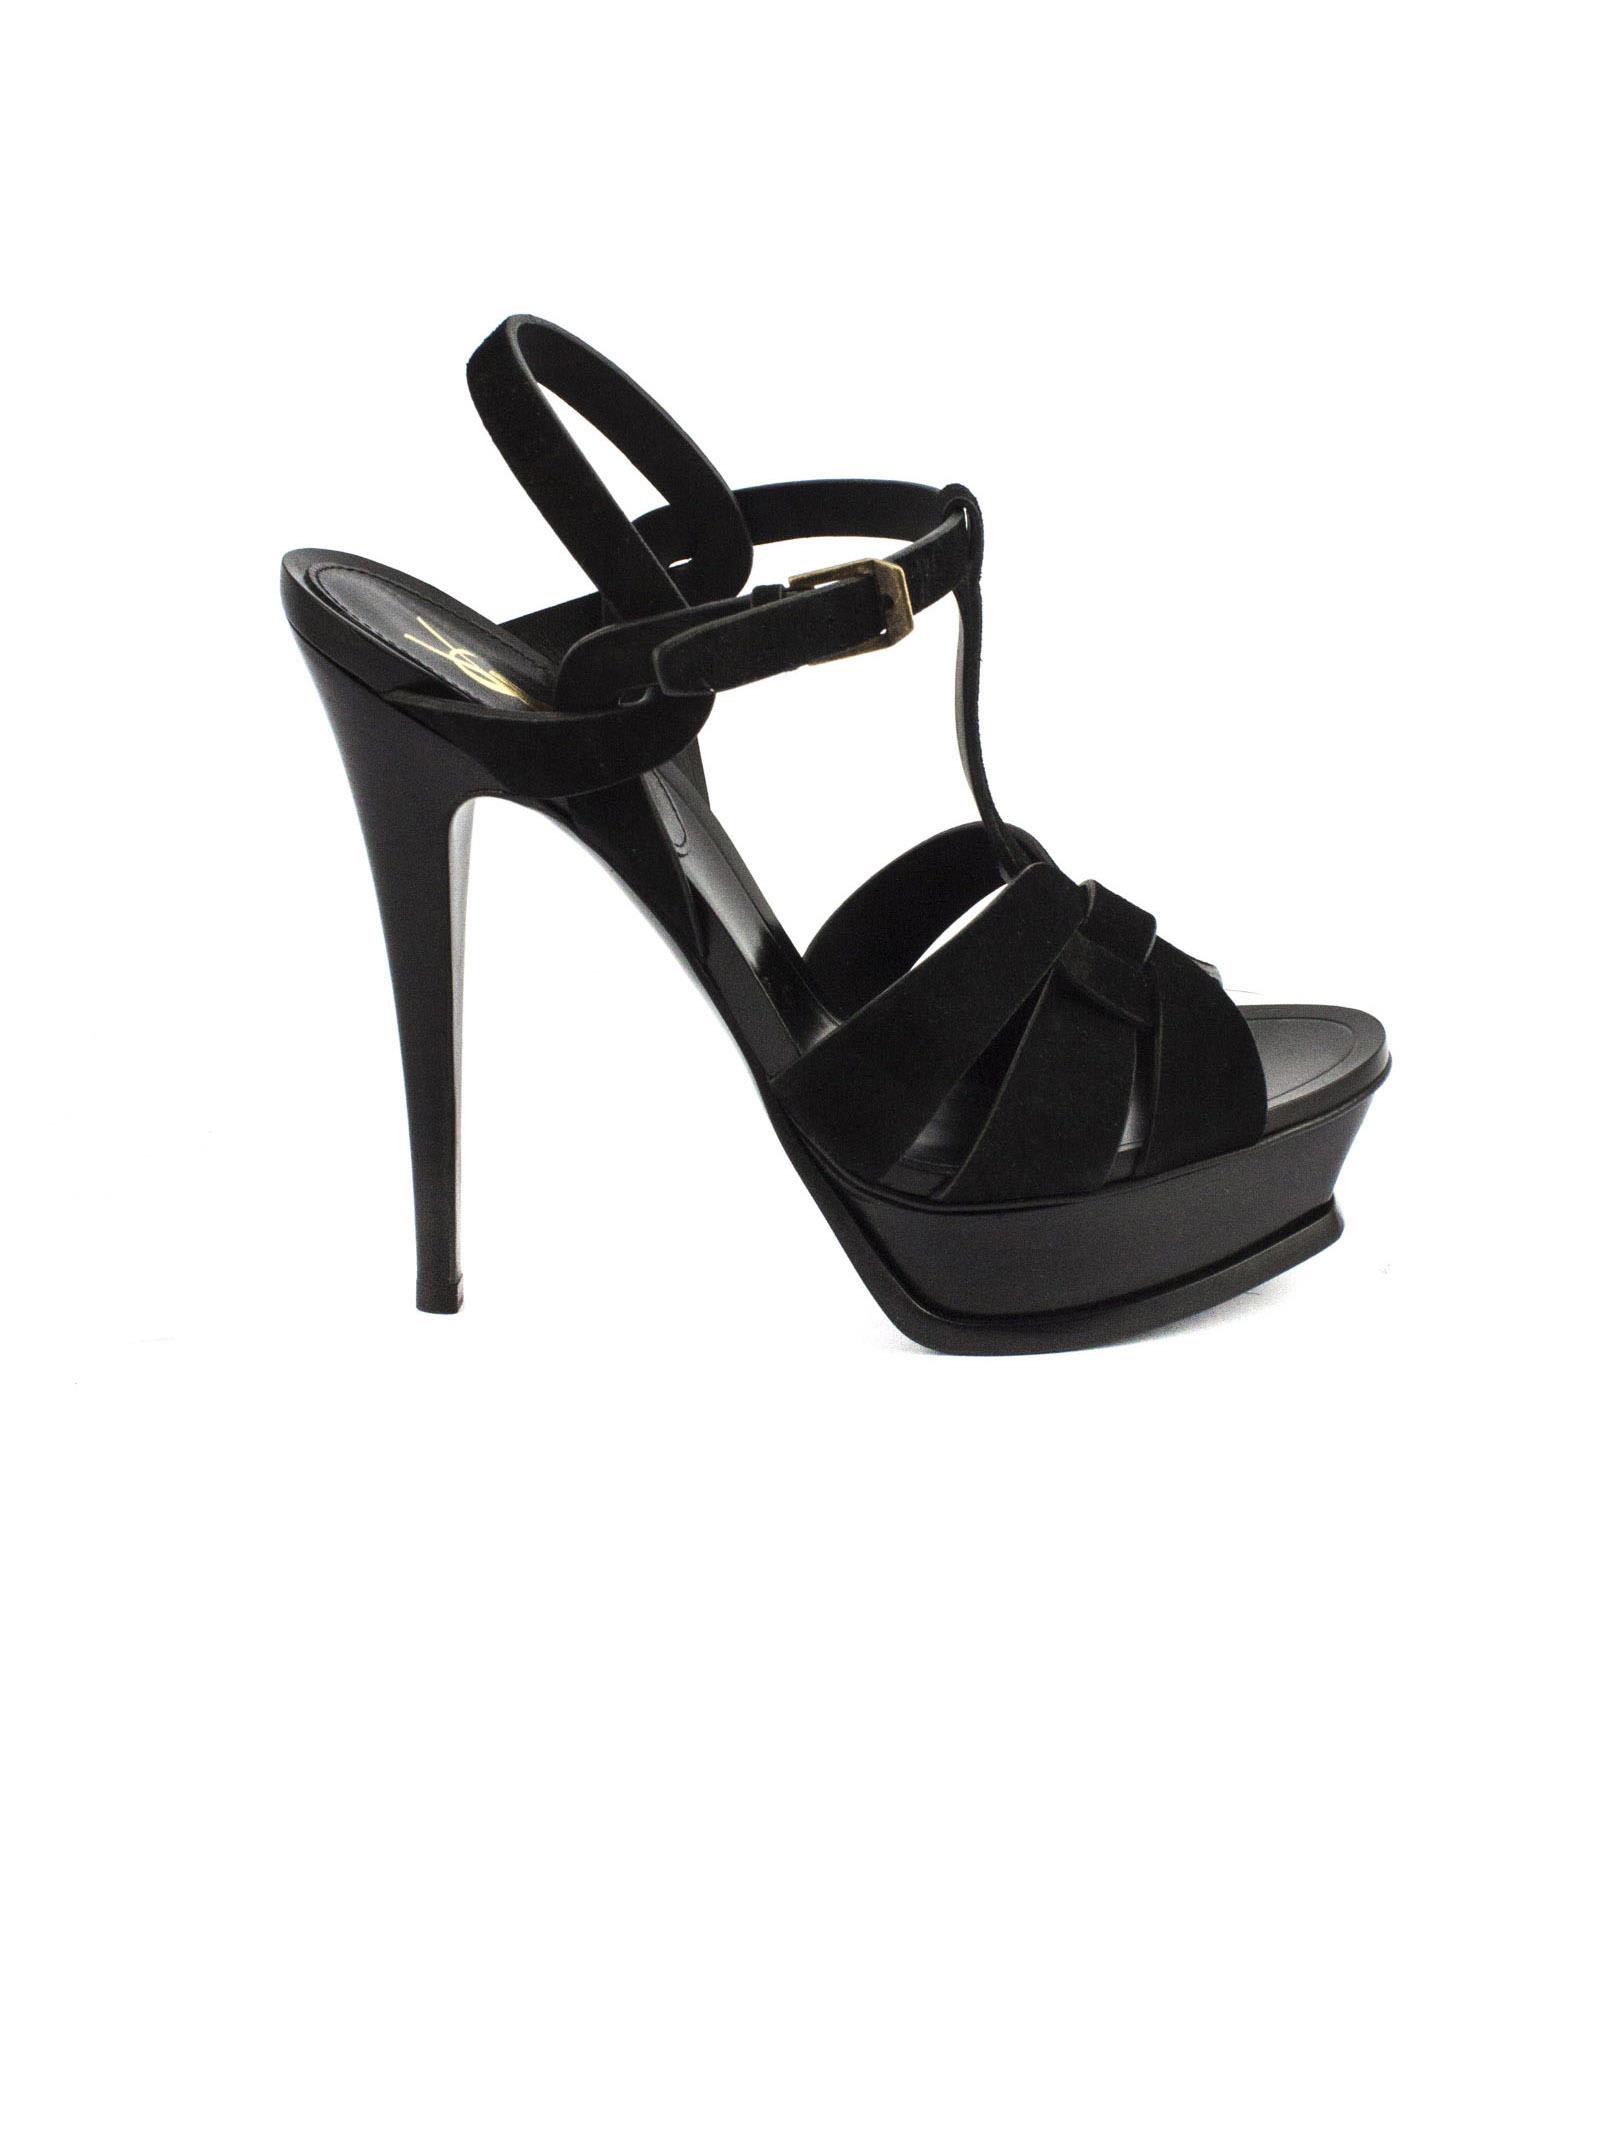 Buy Saint Laurent Black Suede Tribute Sandal online, shop Saint Laurent shoes with free shipping